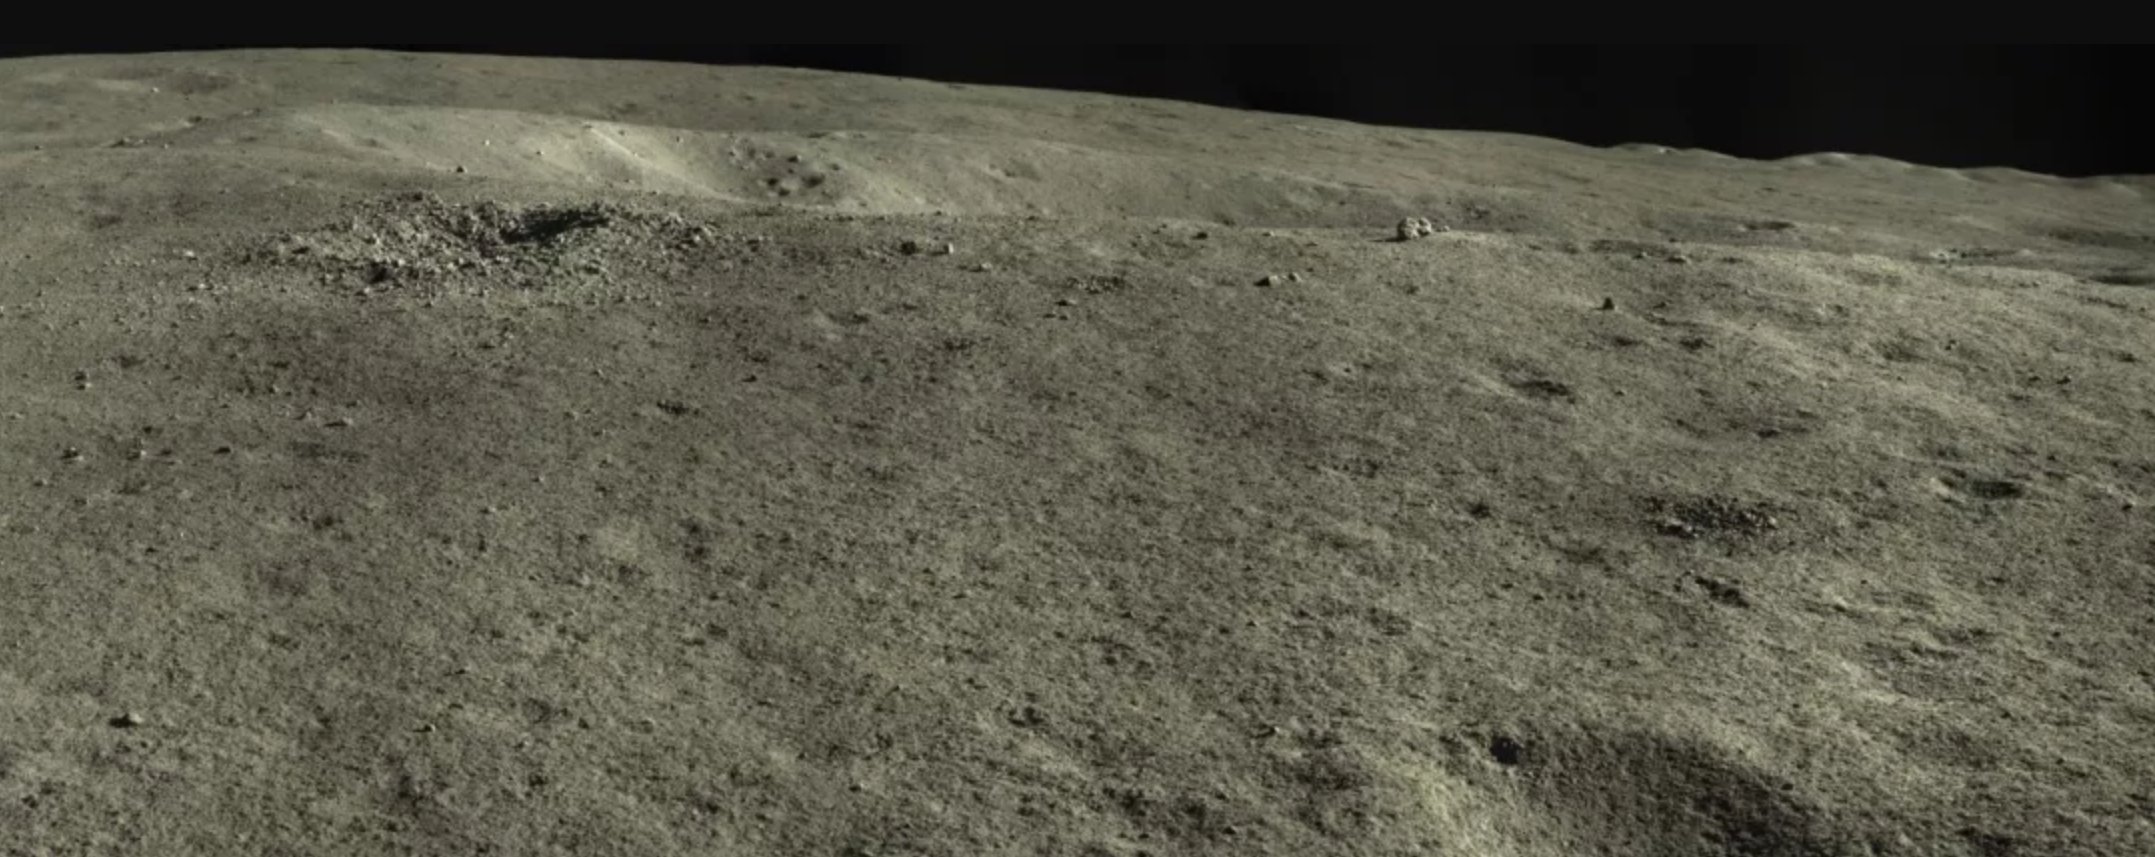 Chang'e 4 - Mission sur la face cachée de la Lune (rover Yutu 2) - Page 17 12294